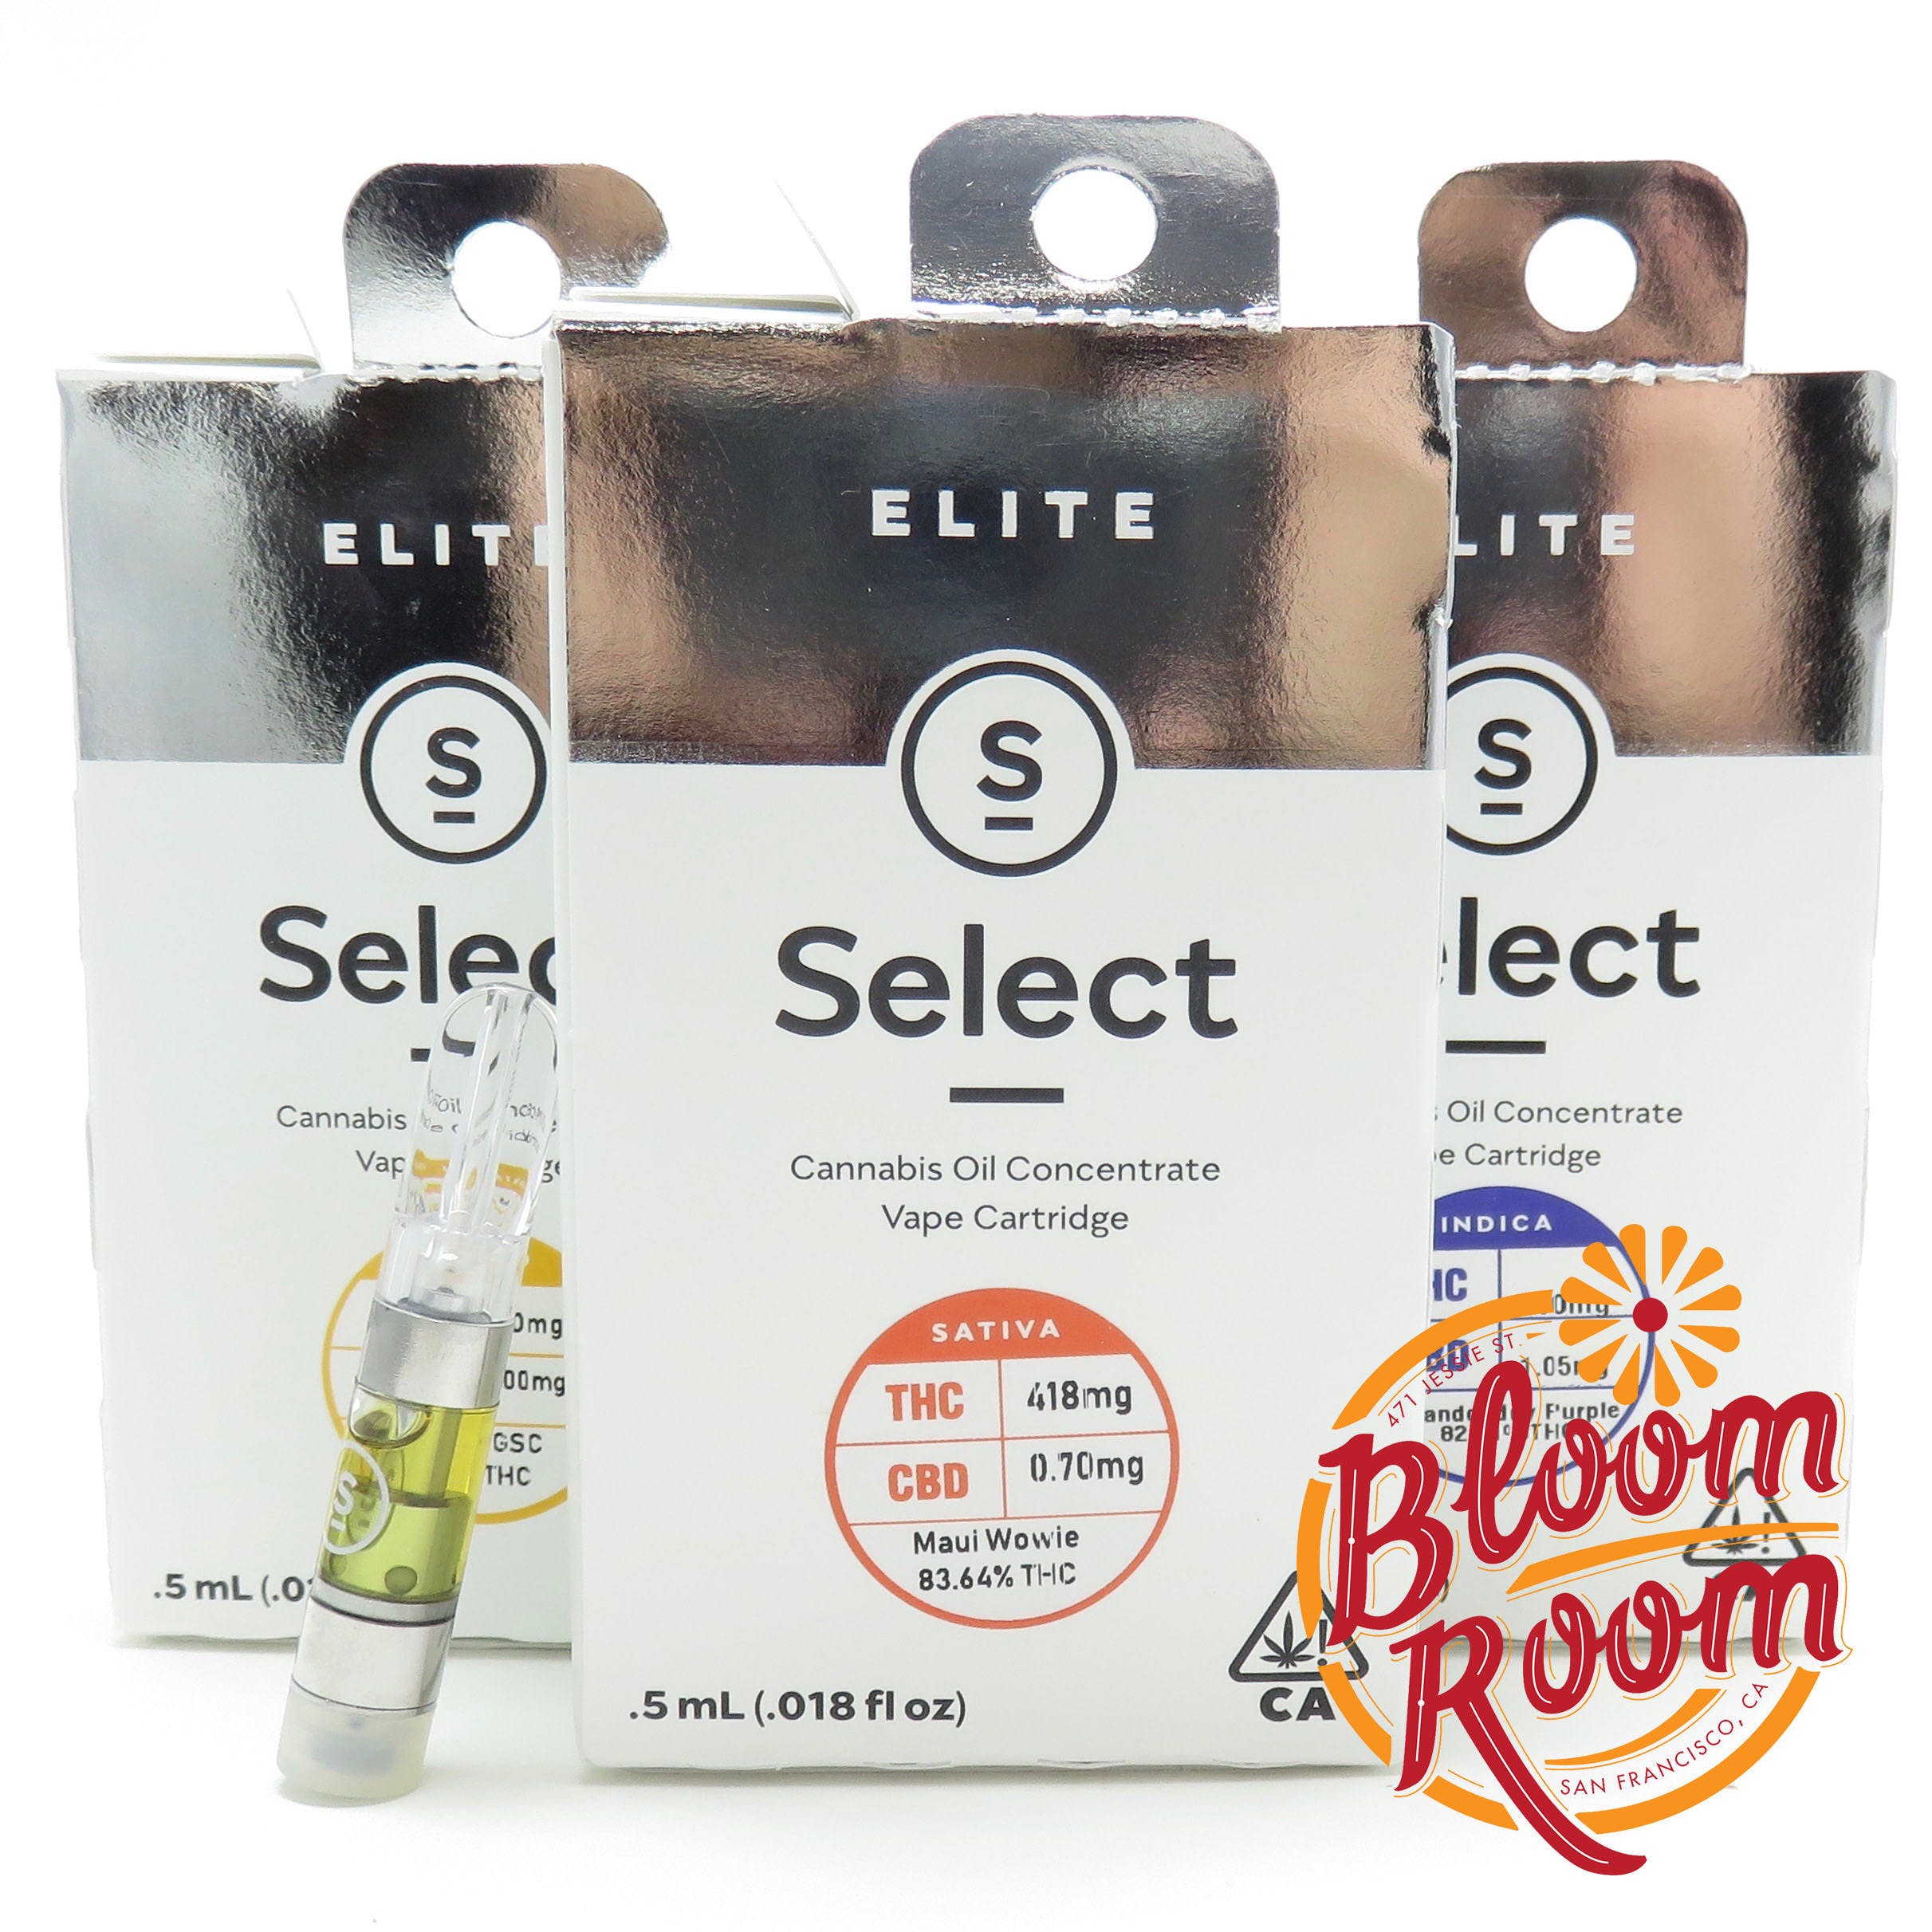 Select - Elite Cart - Durban Poison